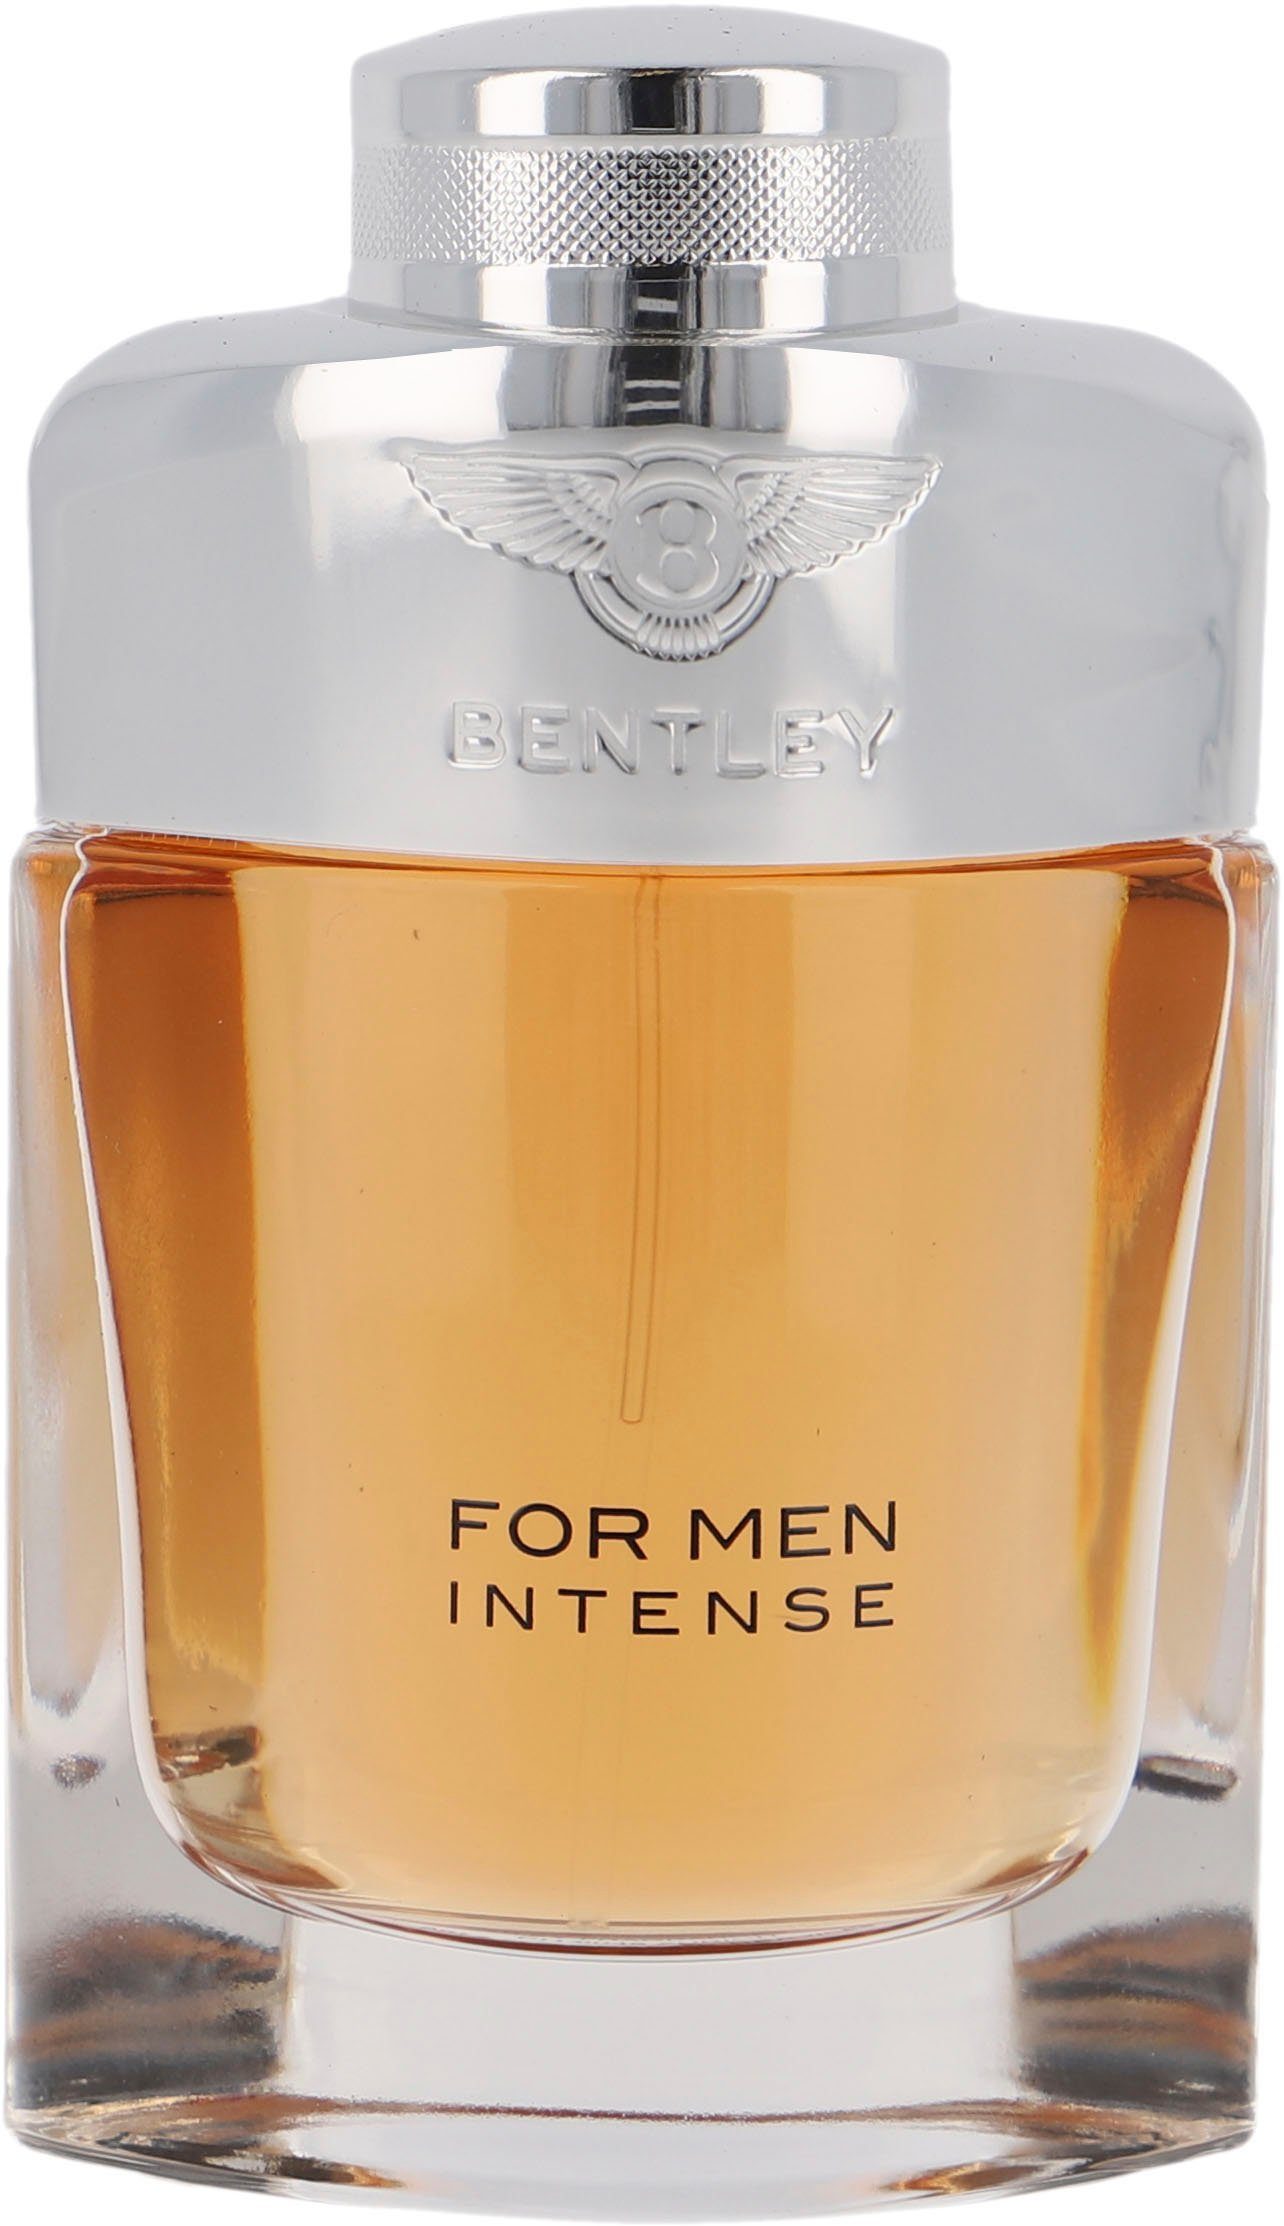 Men Intense Parfum de for Bentley Eau BENTLEY